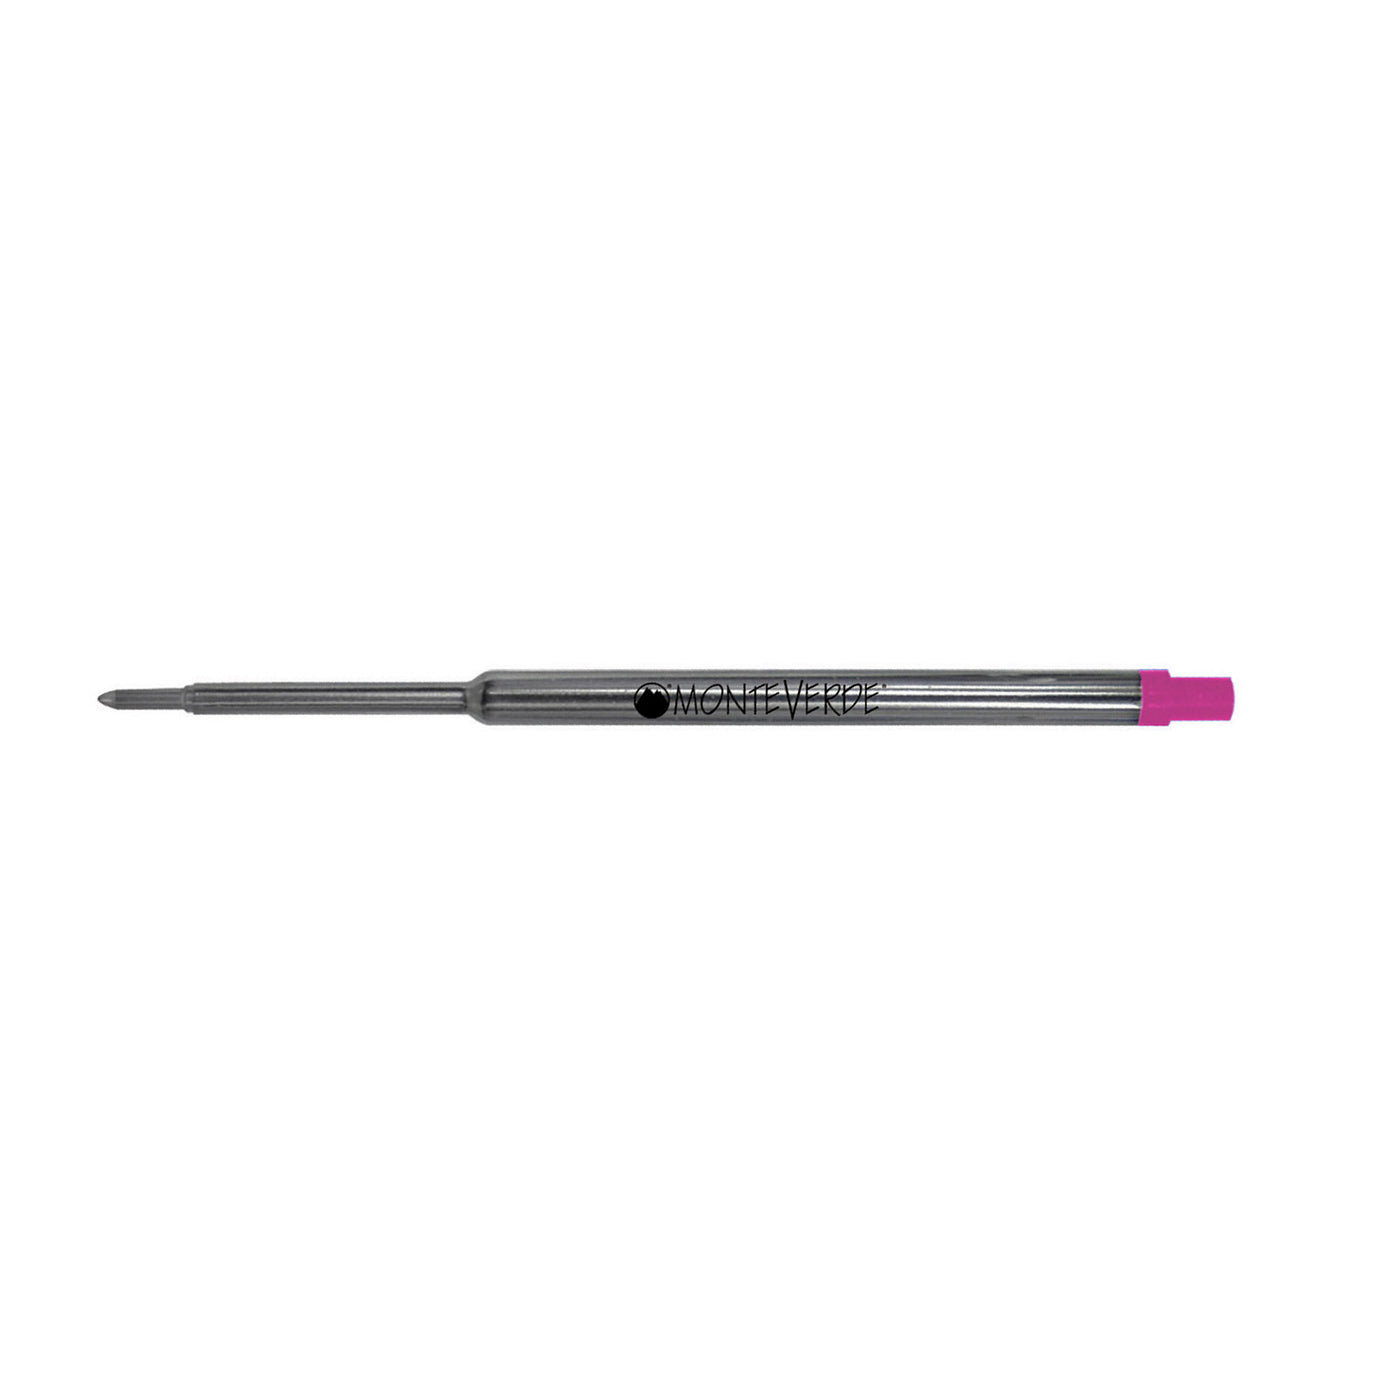 Monteverde Ball Pen Refill for Waterman - Medium - Pink - Pack of 2 3